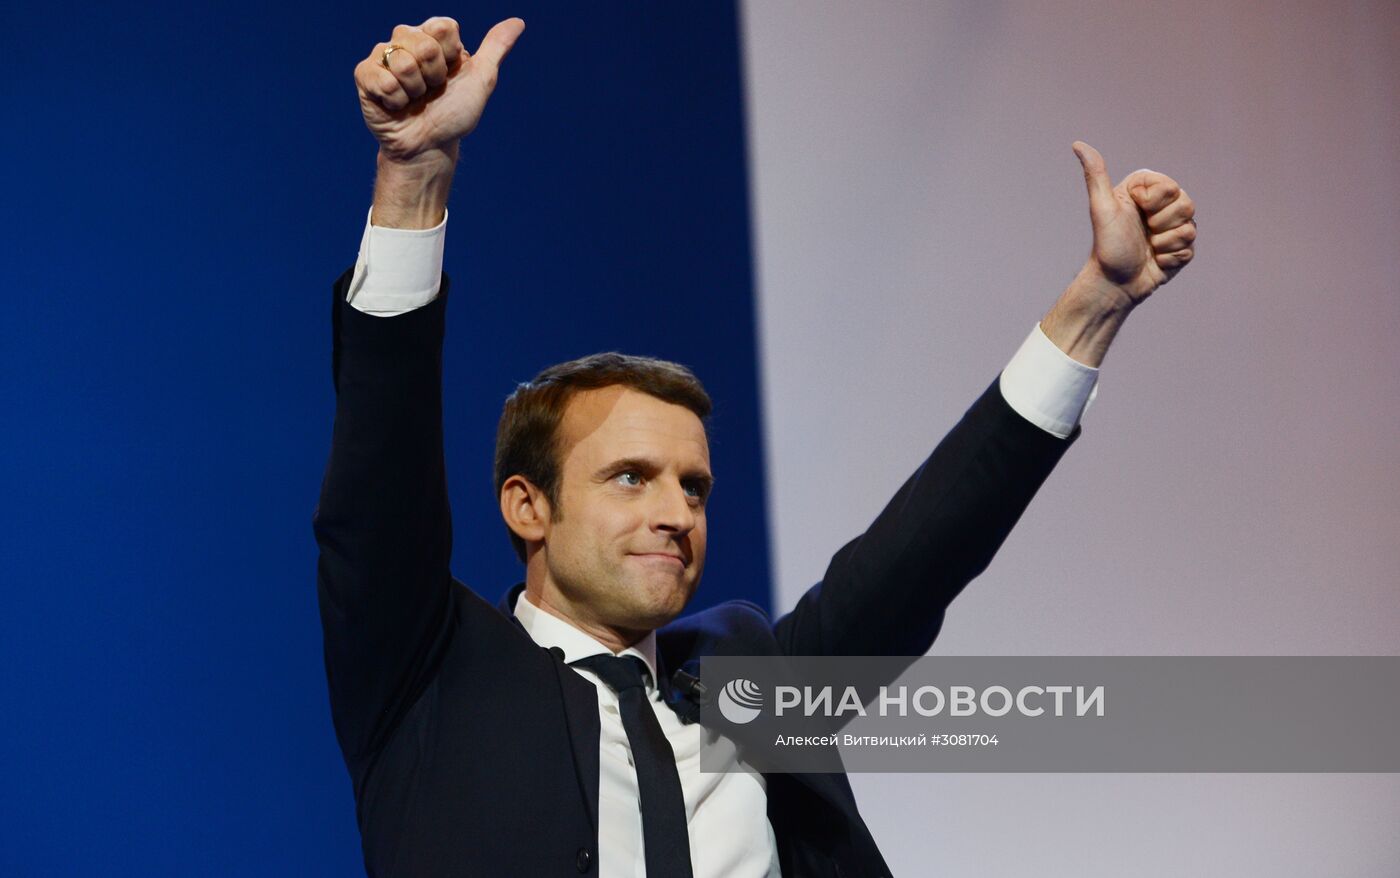 Первый тур президентских выборов во Франции